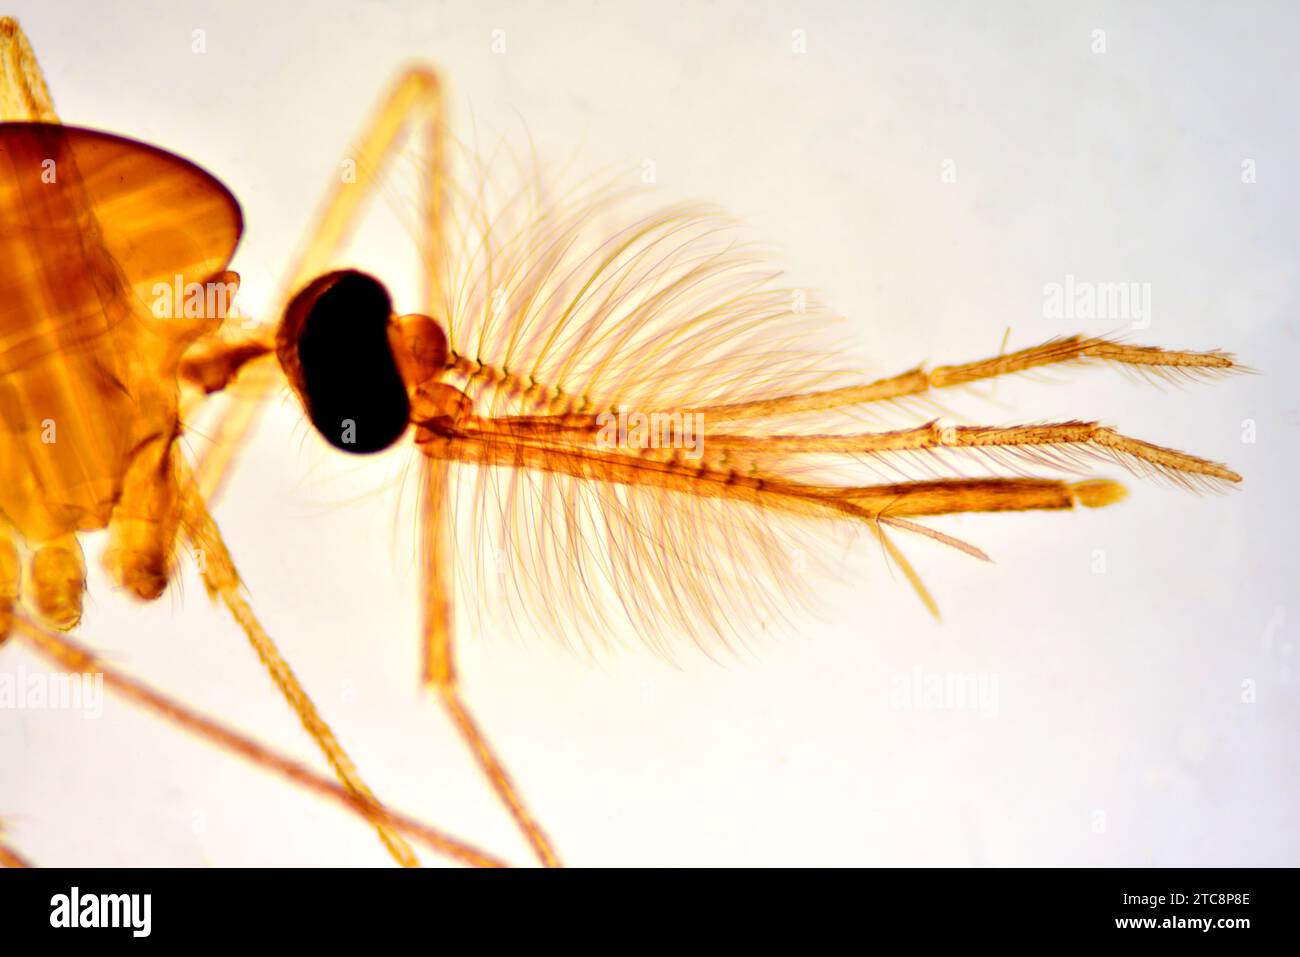 Männliche gemeine Hausmücke (Culex pipiens), Kopf mit Antennen, Proboscis, Handflächen, zusammengesetzte Augen und Beine. Lichtmikroskop X50 mit 10 cm Breite. Stockfoto